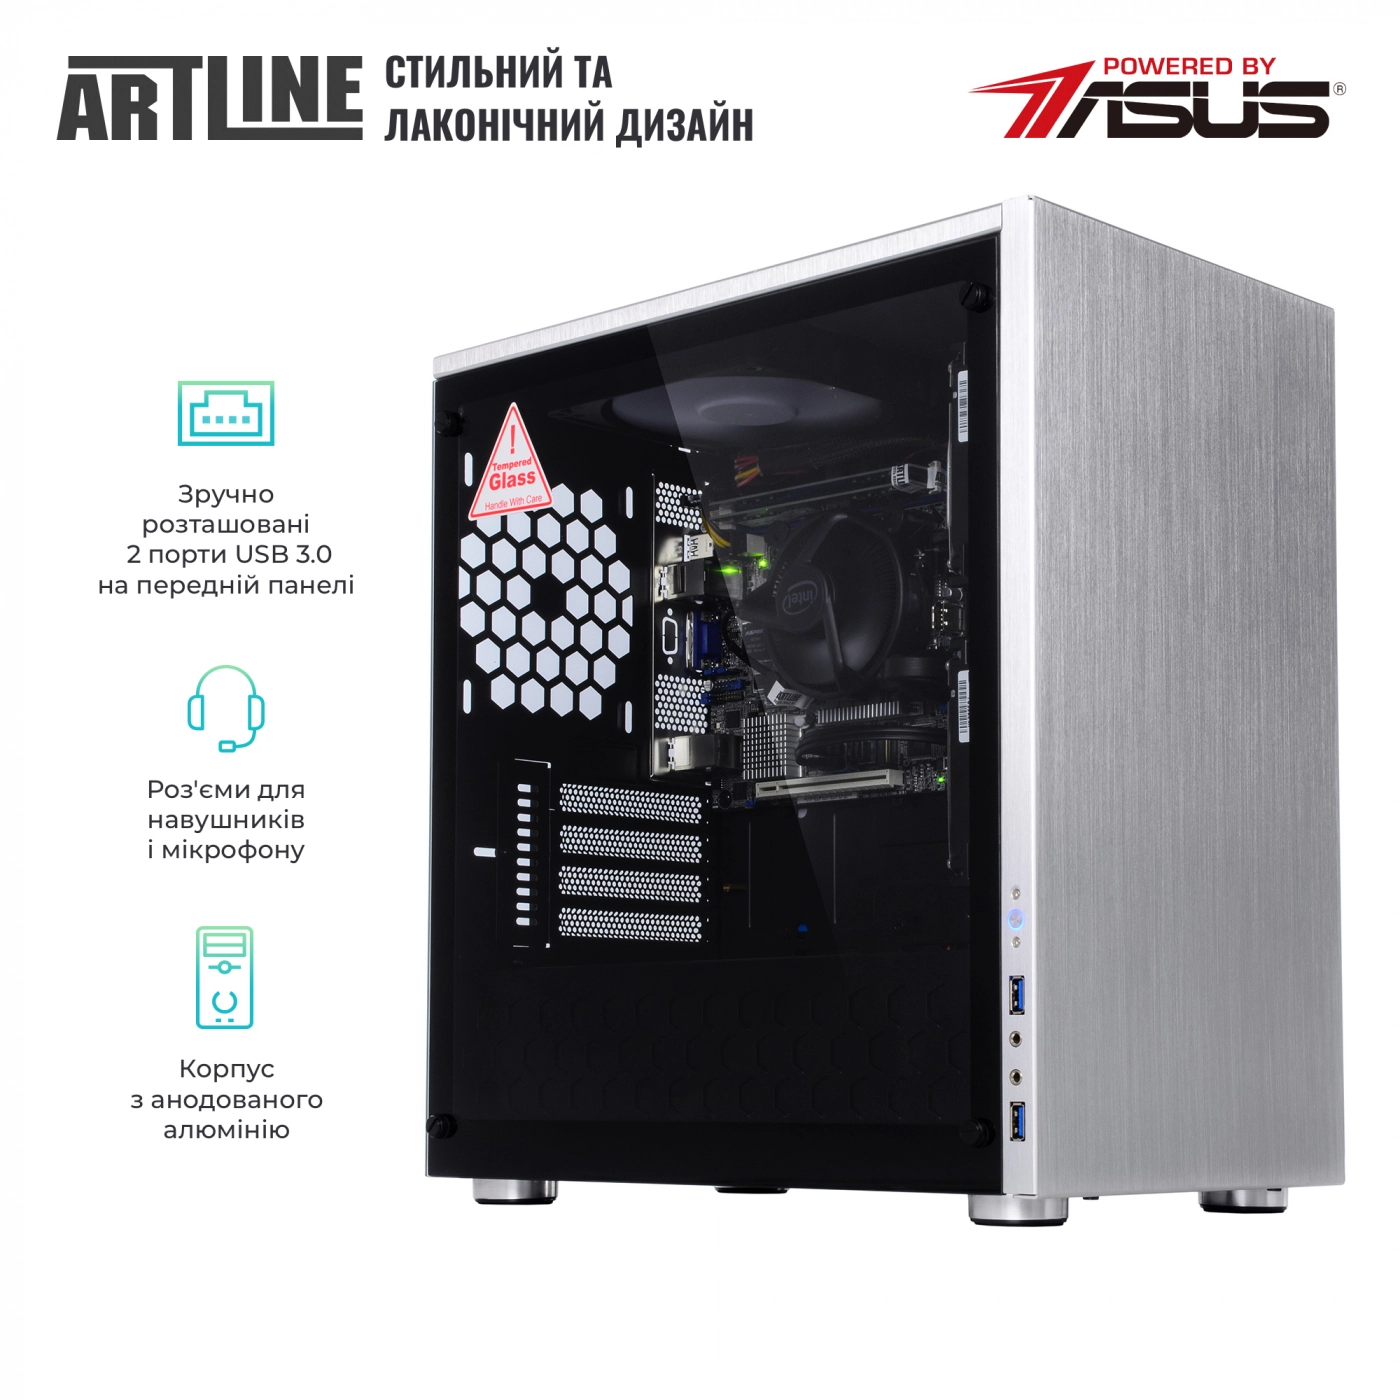 Купить Сервер ARTLINE Business T21v03 - фото 3